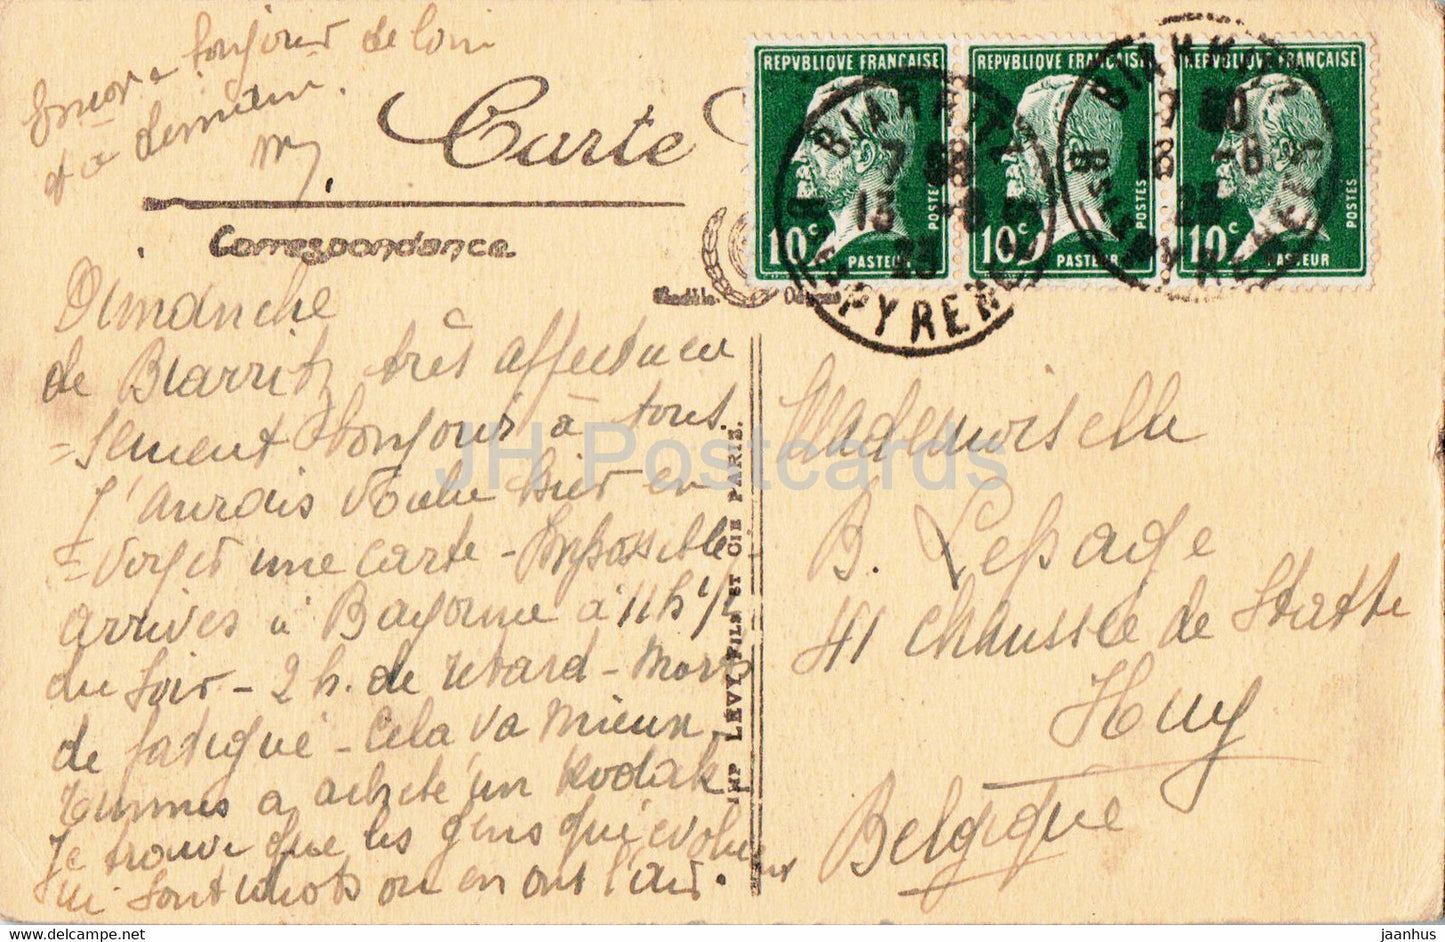 Biarritz - Effet de Vagues au Rocher de la Vierge - 398 - carte postale ancienne - 1923 - France - utilisé